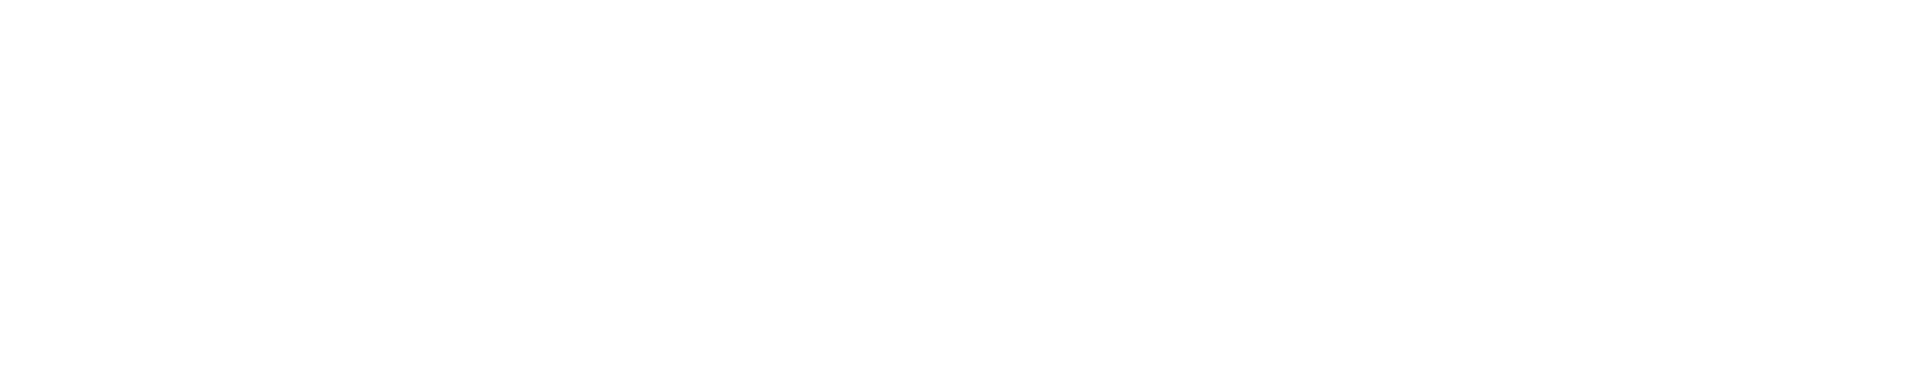 Galindo Ópticos | Óptica en Antequera | Gafas de Sol y Graduadas